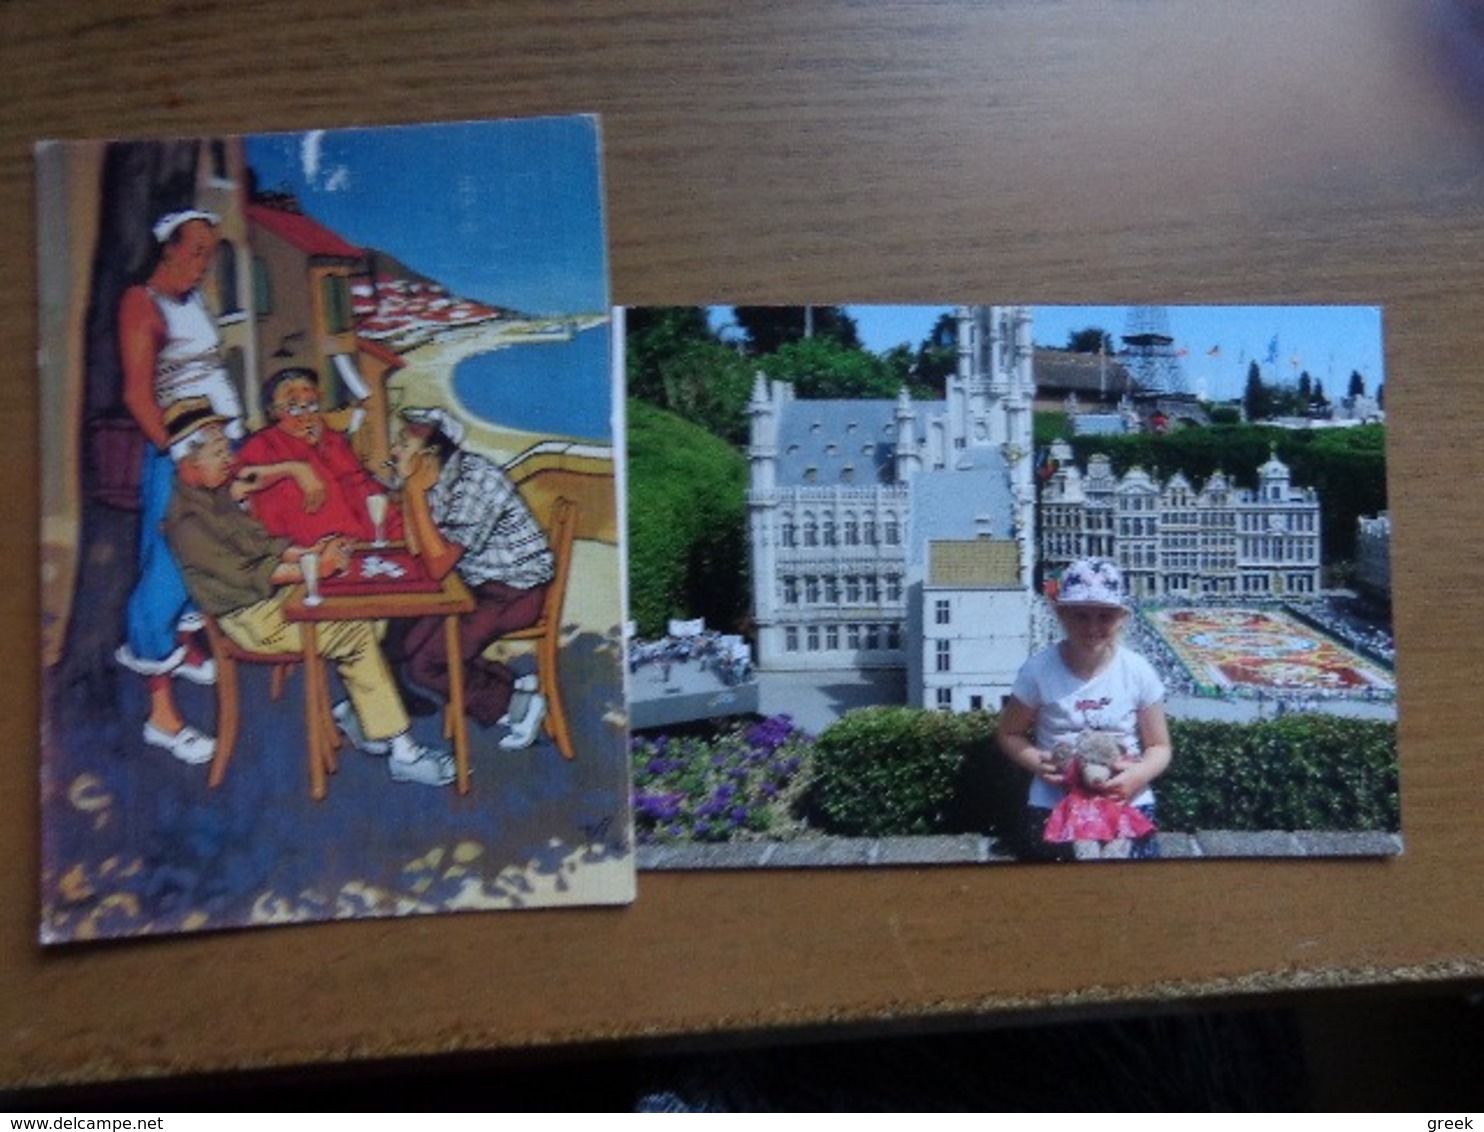 Doos postkaarten (2kg187) Allerlei landen (ook veel belgie gekleurd) zie enkele foto's